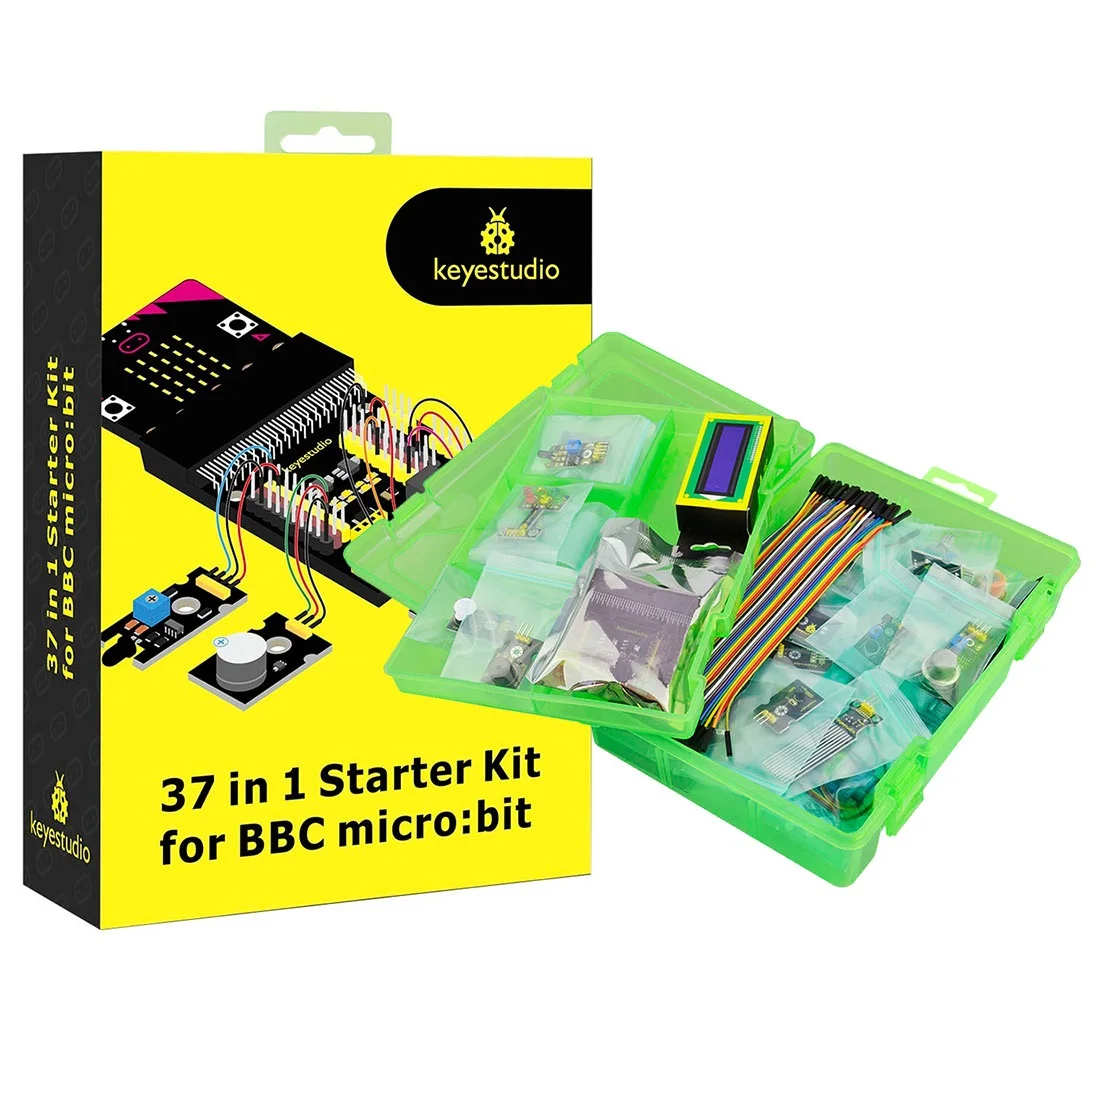 keyestudio-micro-bit-sensor-kit-37-in-1-sensor-starter-kit-for-bbc-micro-bit-v2-kit-learning-kit-with-micro-bit-v20-board